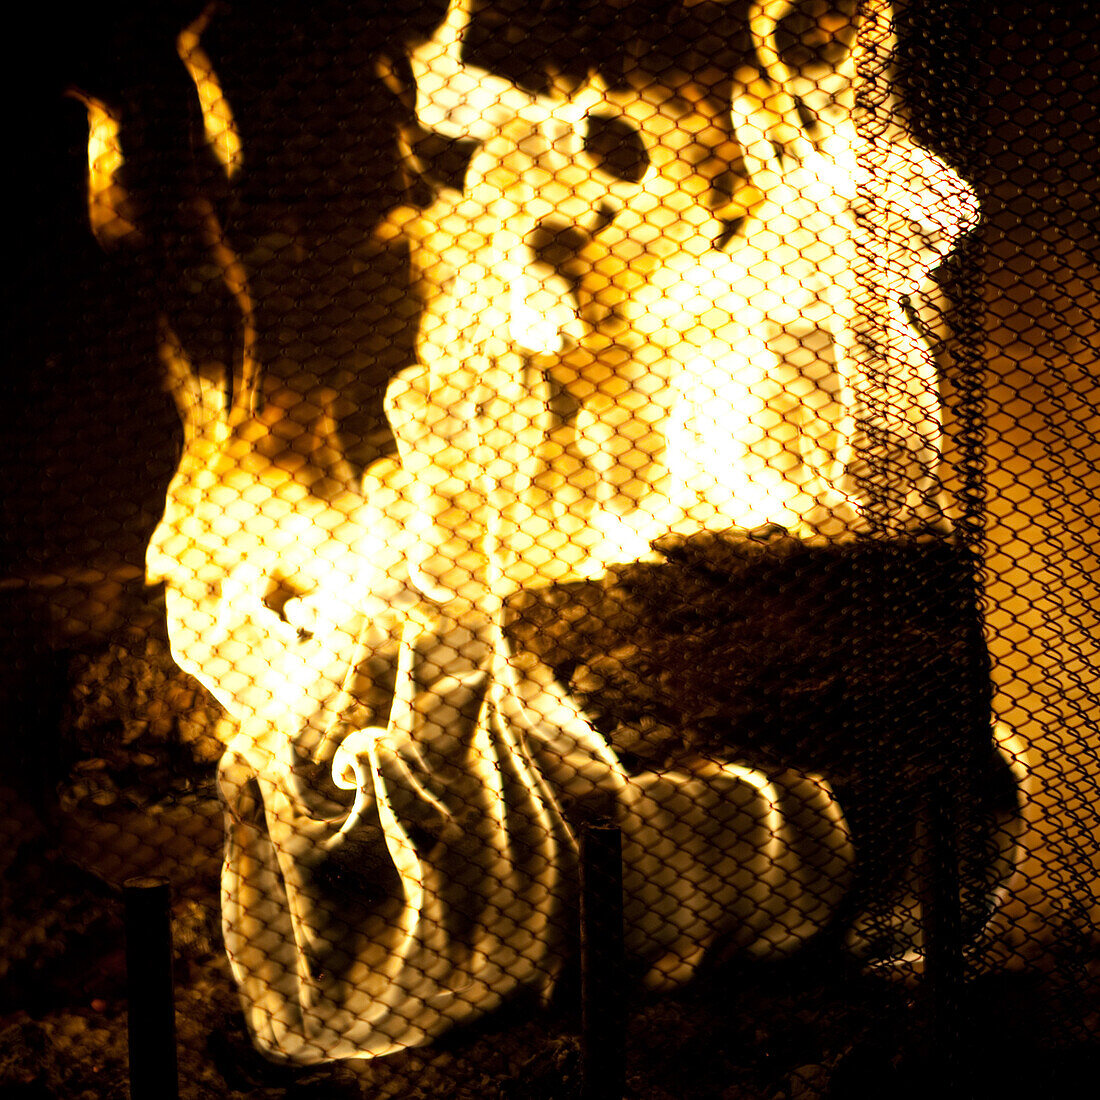 Fire in Fireplace